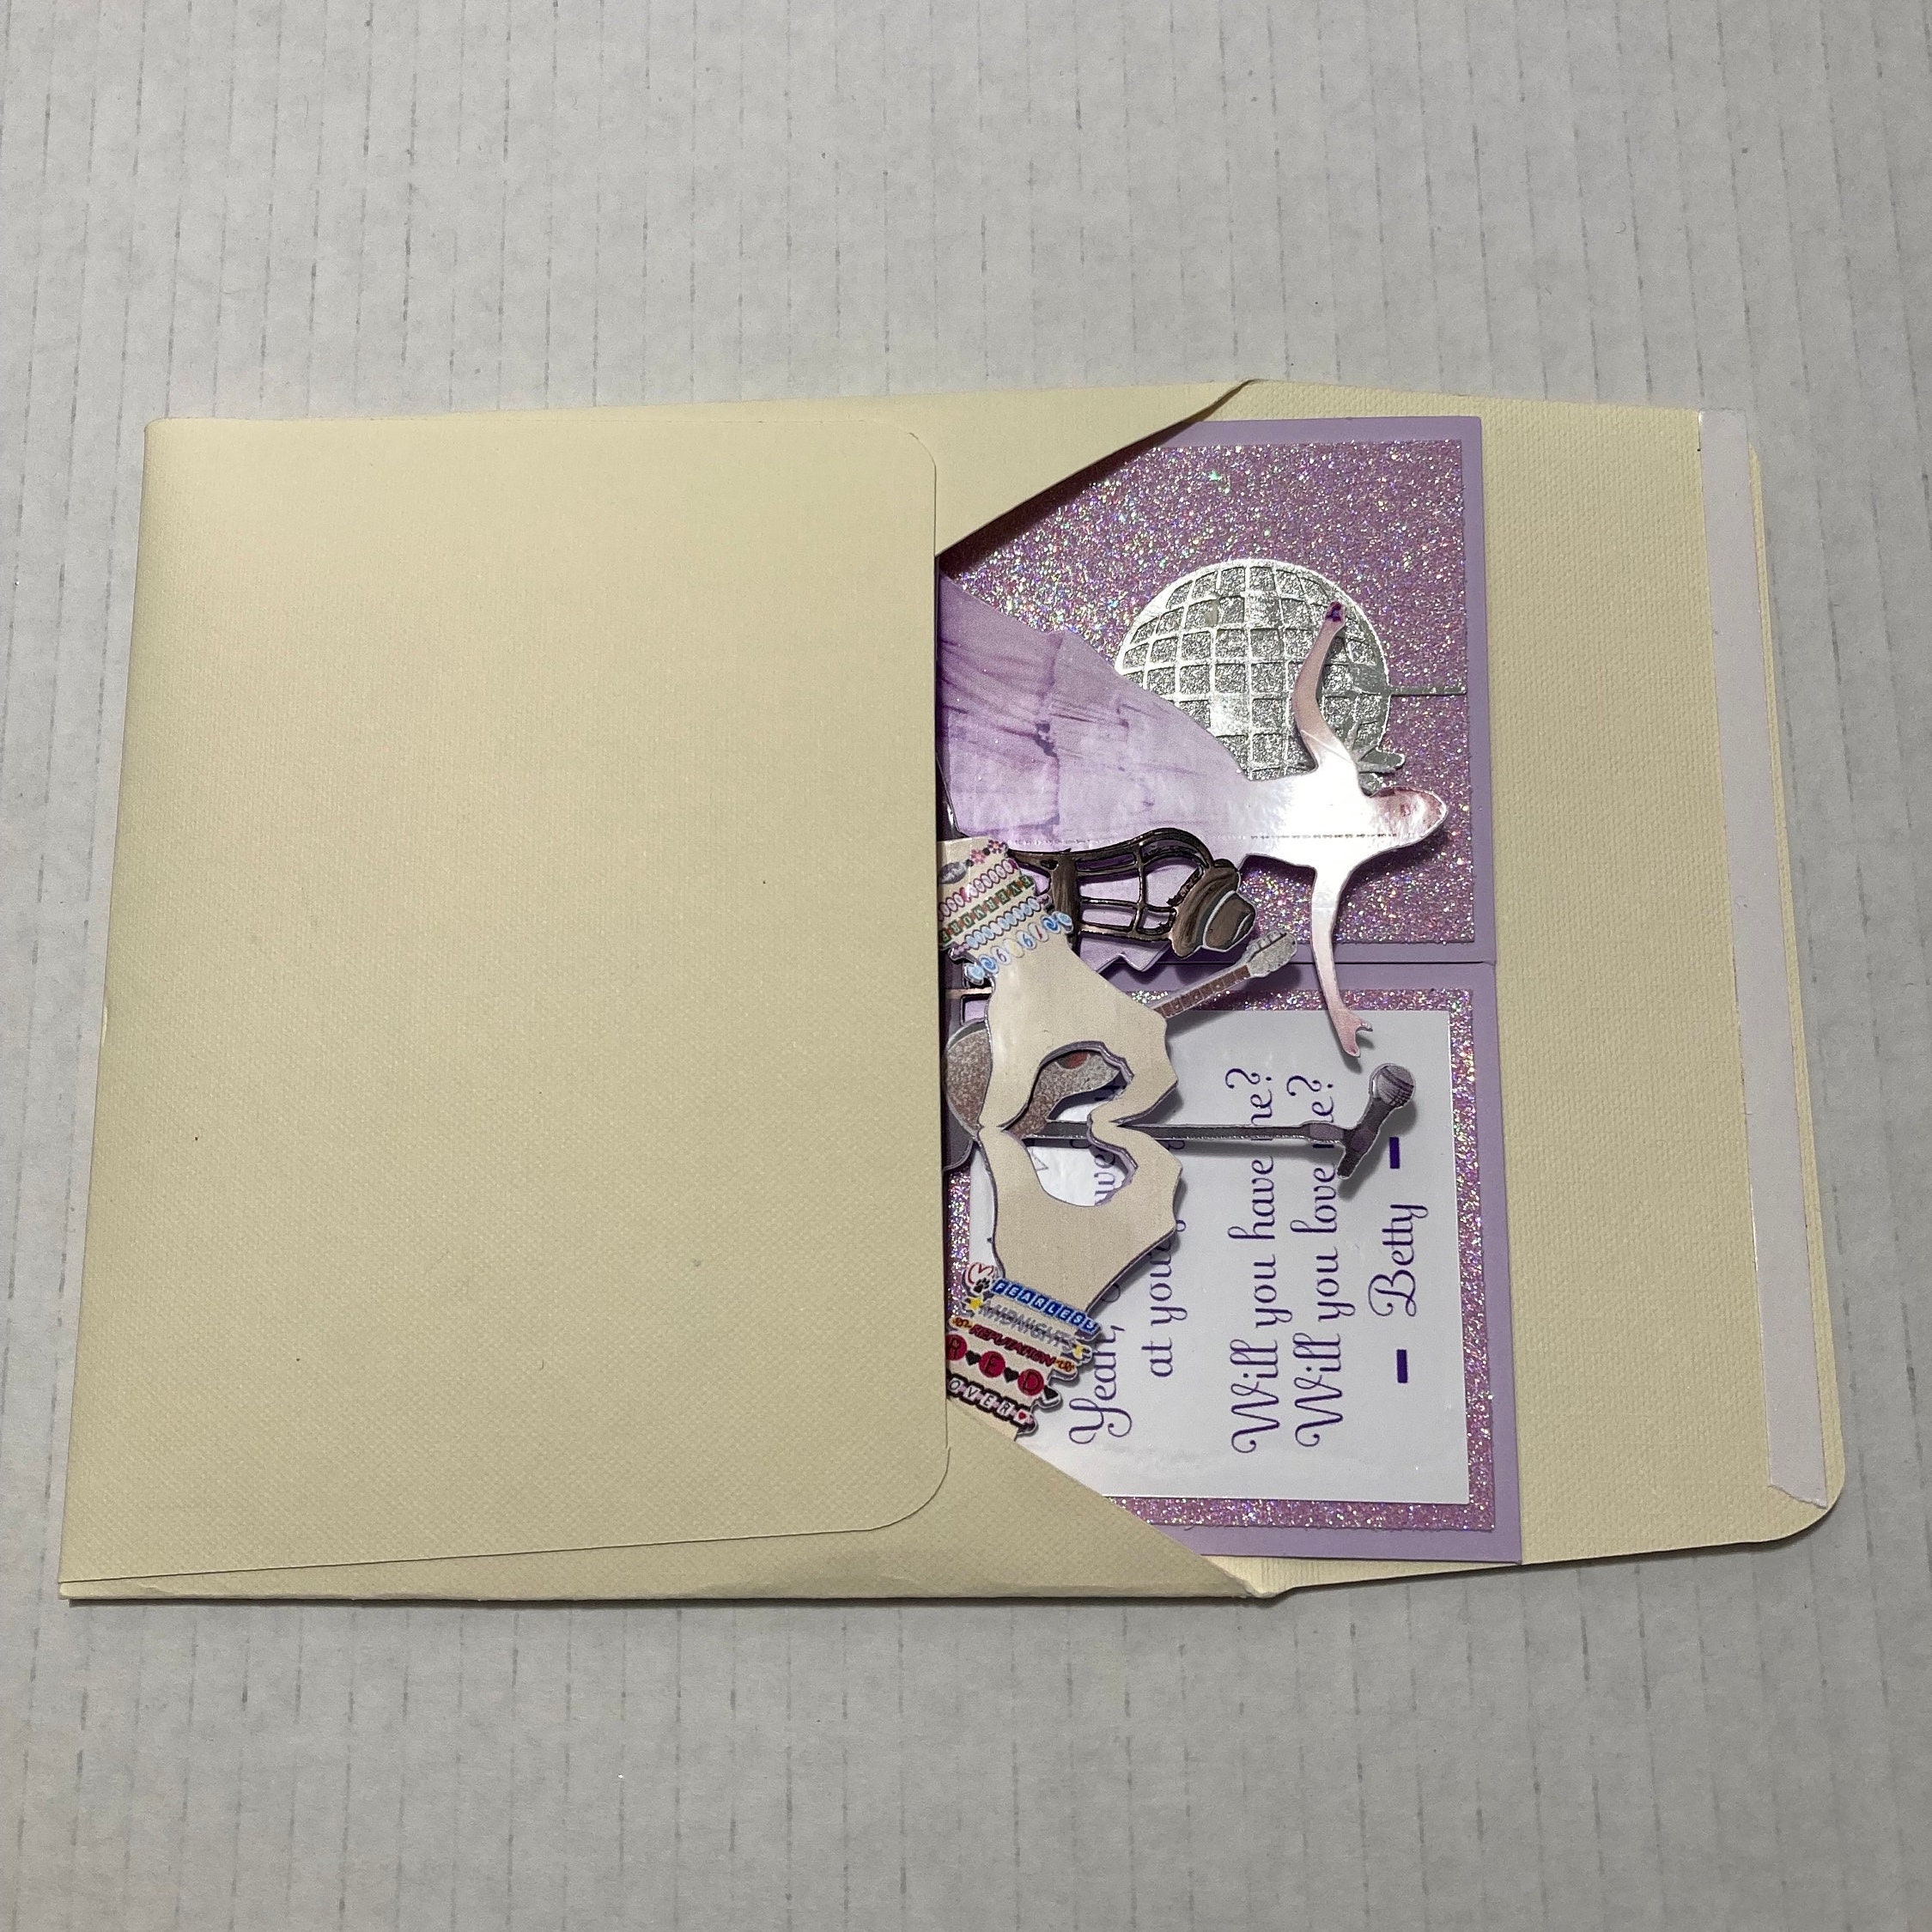 T. Swift Deadpan Pop Letterpress Greeting Card